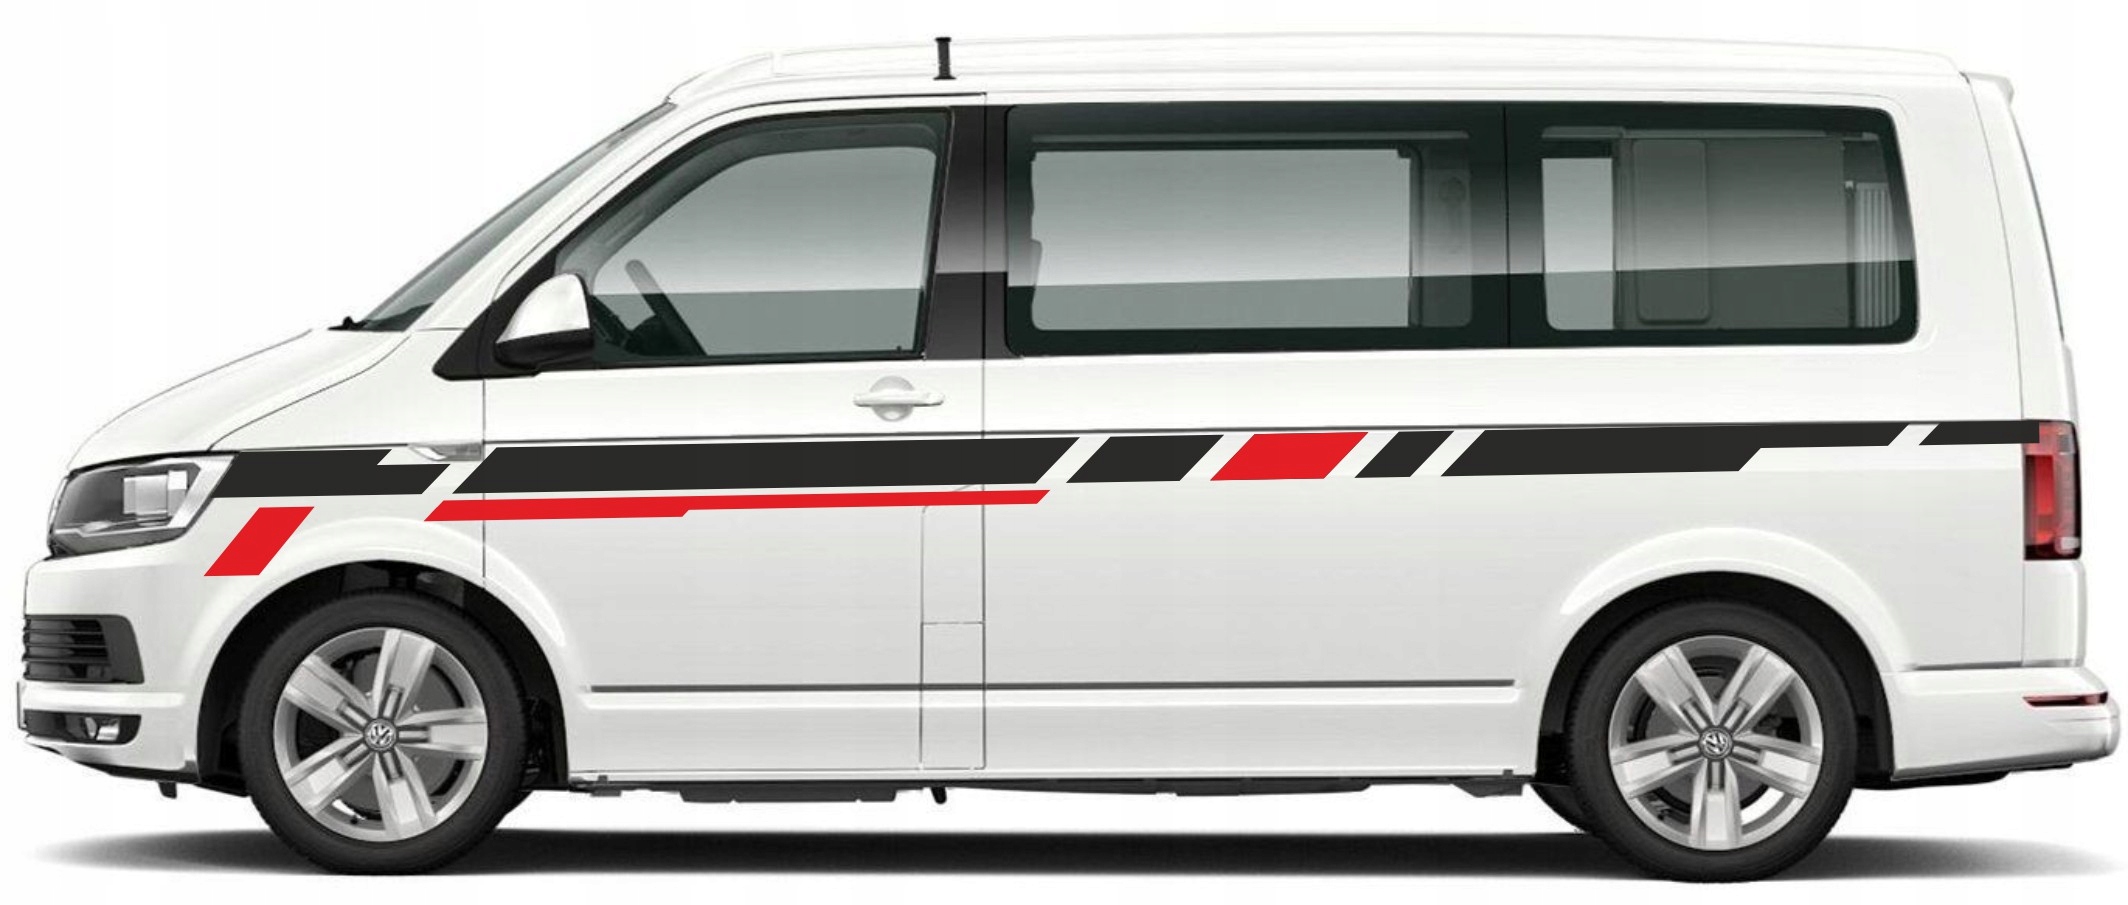 VW T6 T5 Custom Edition наклейки высокого качества